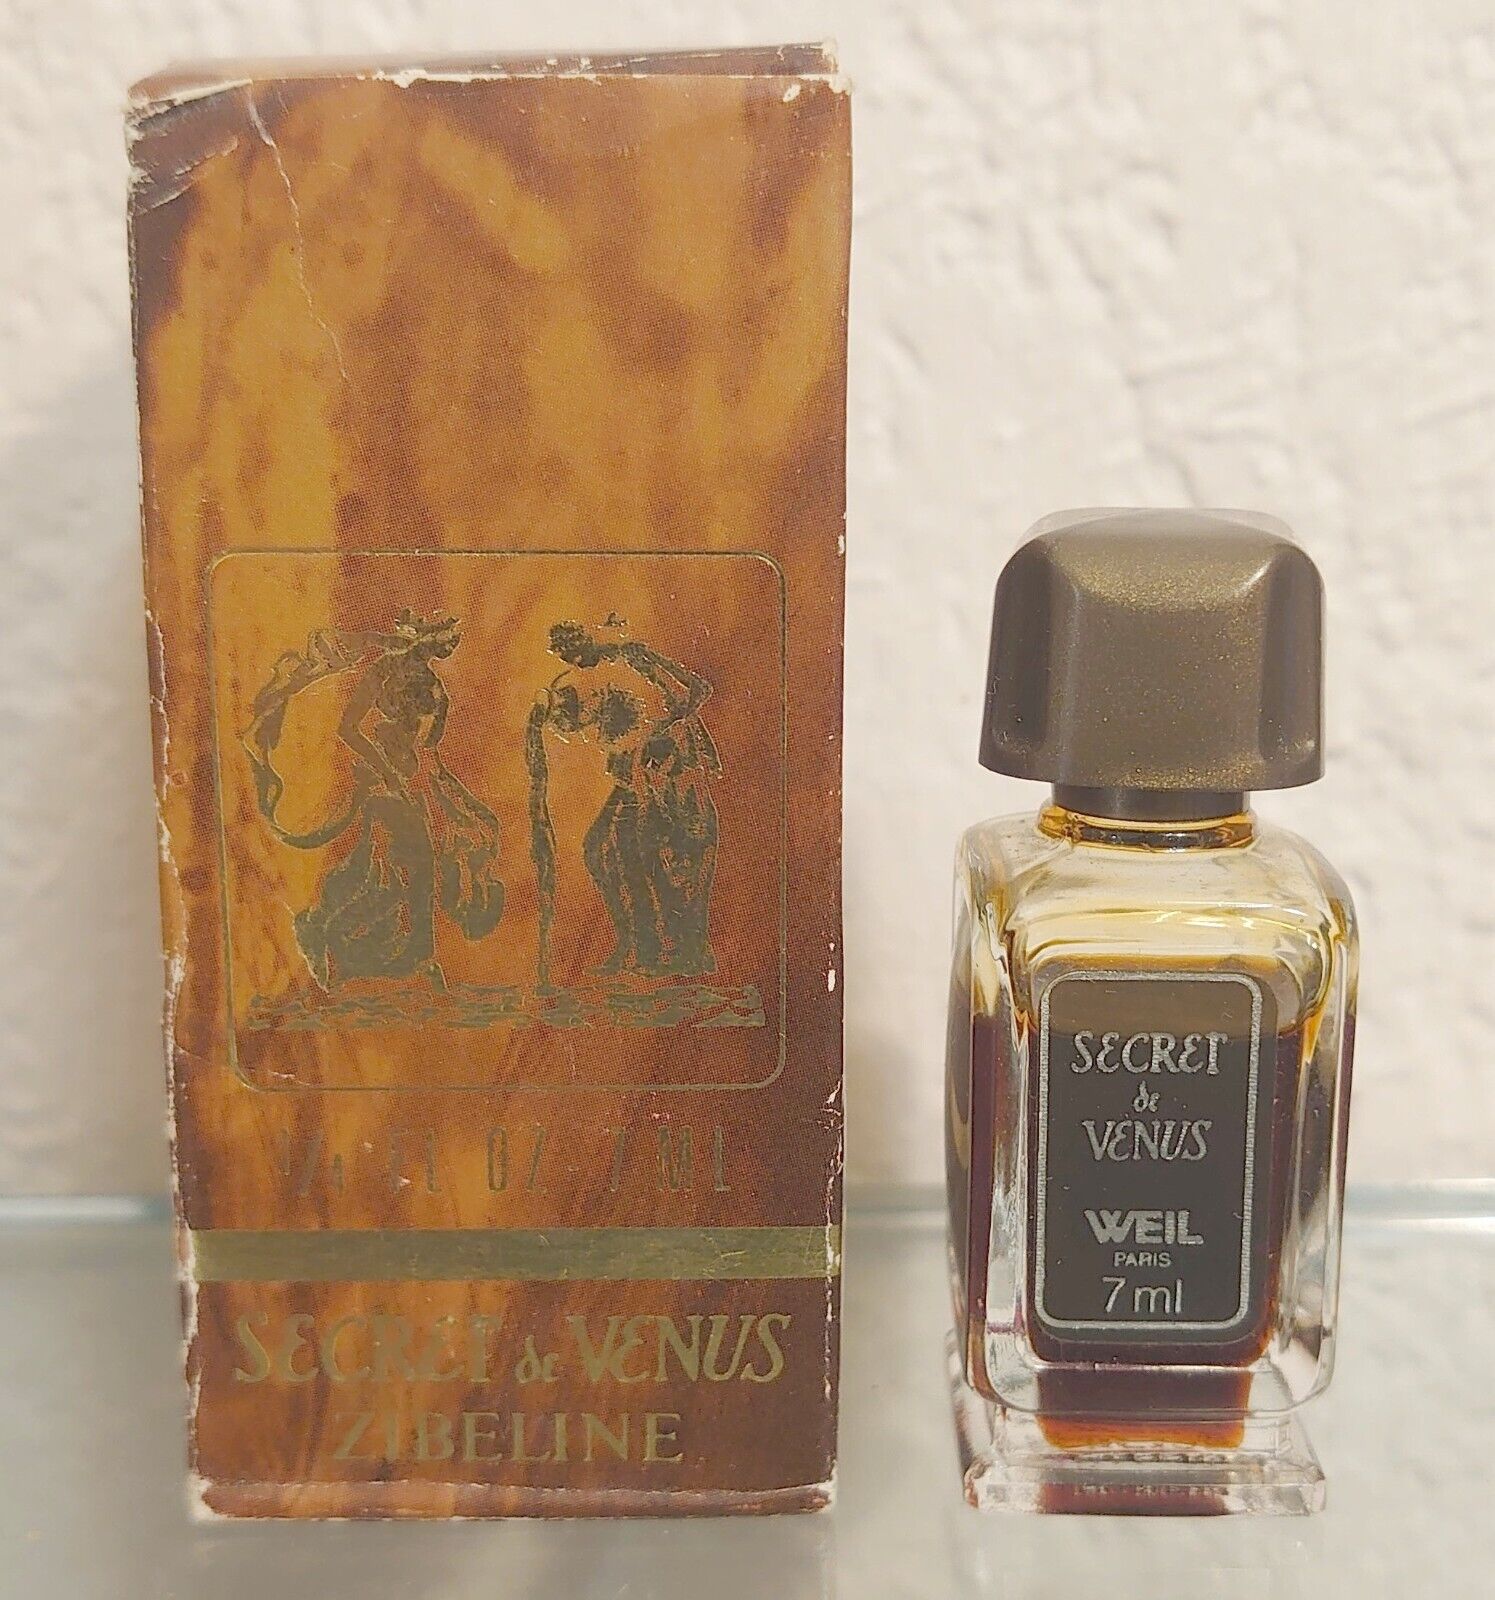 SECRET DE VENUS ZIBELINE - WEIL Bath and Body Perfume 7 ML